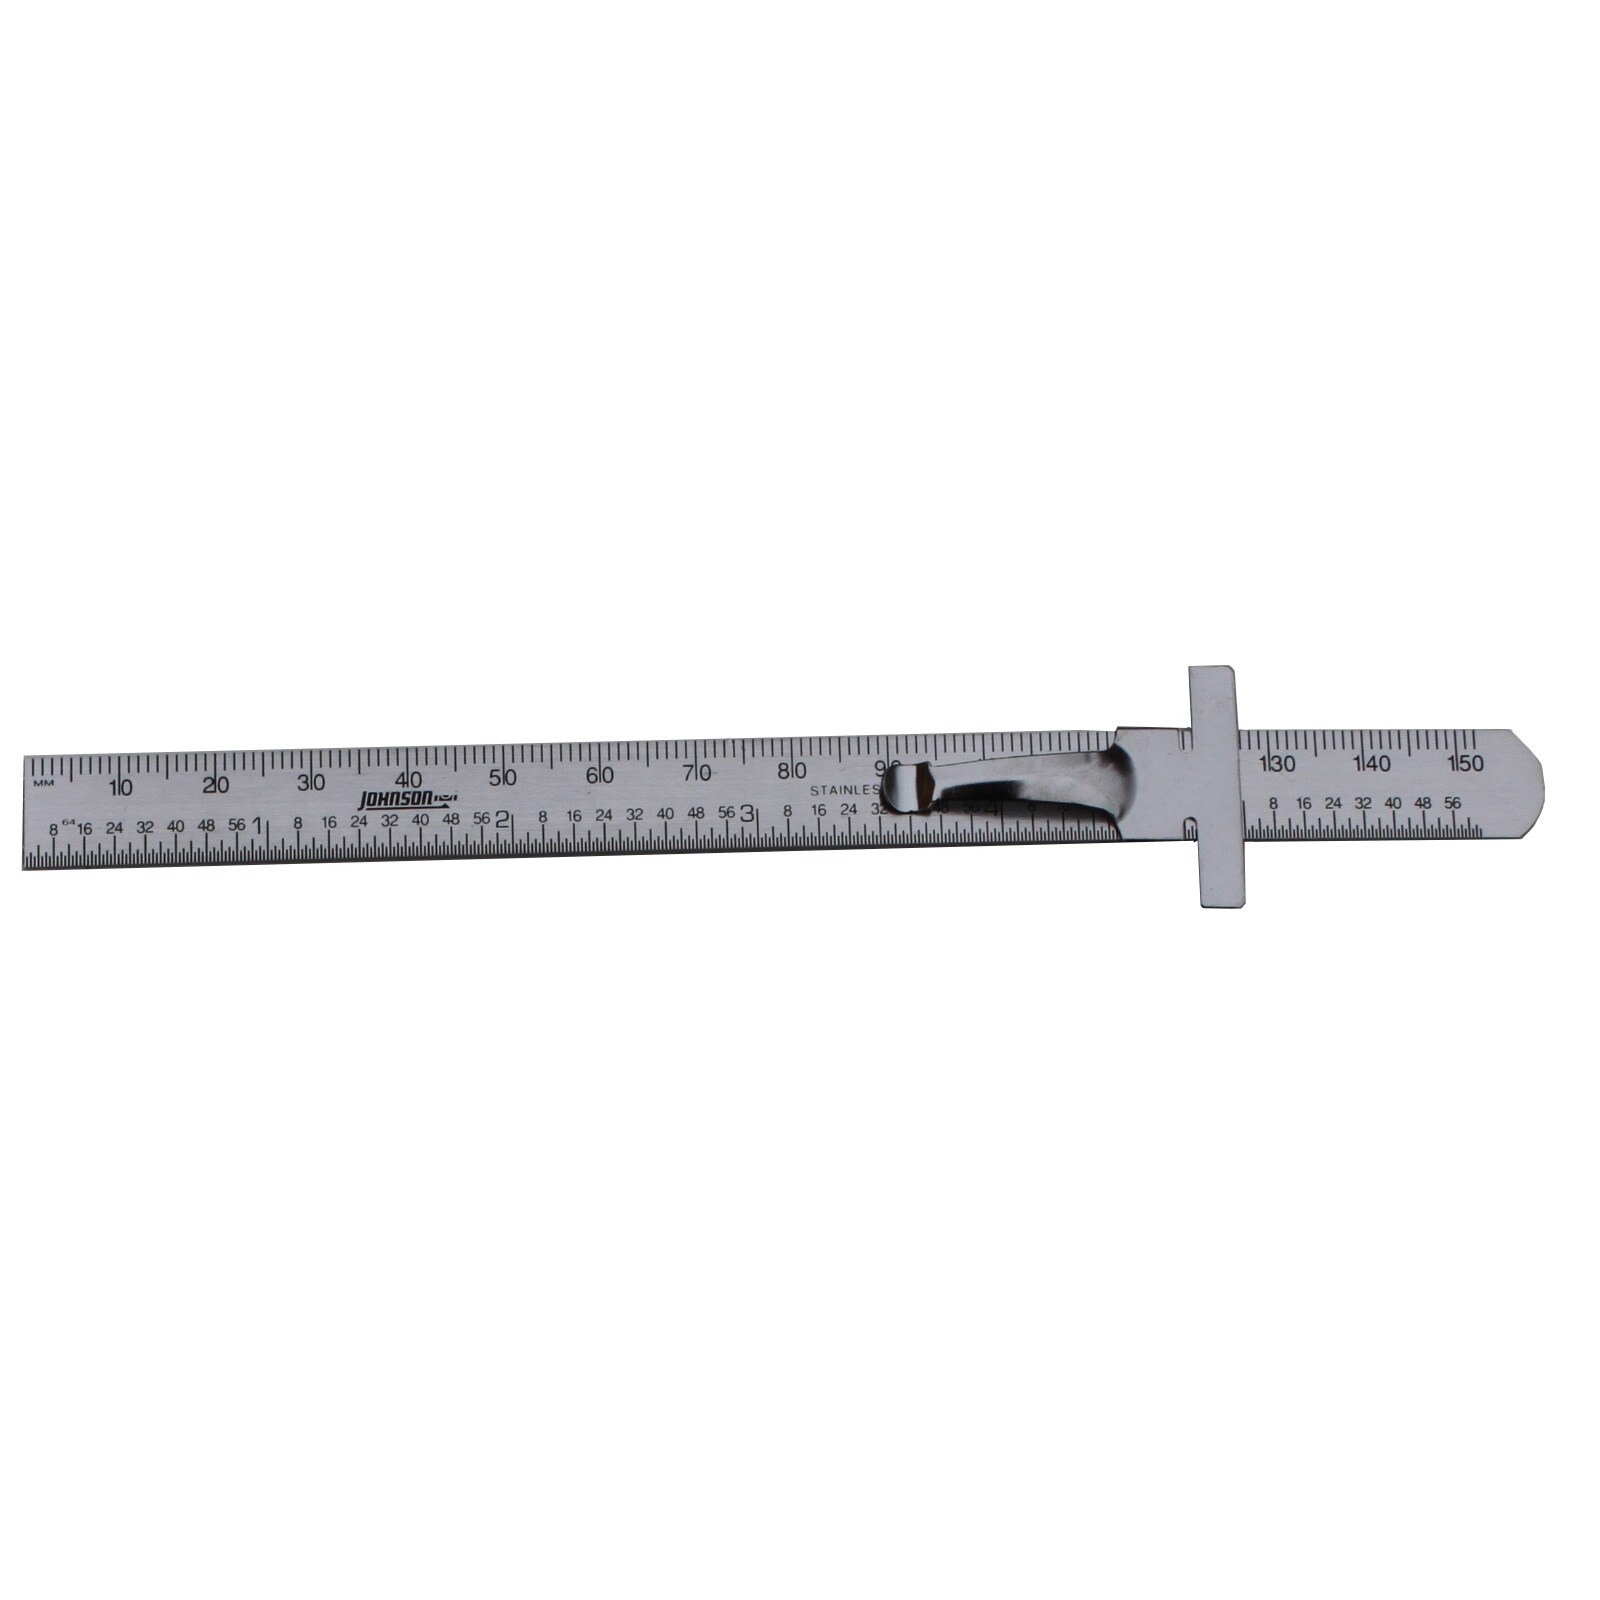 Cricut Rose Metal Metric and Standard (SAE) Ruler in the Rulers